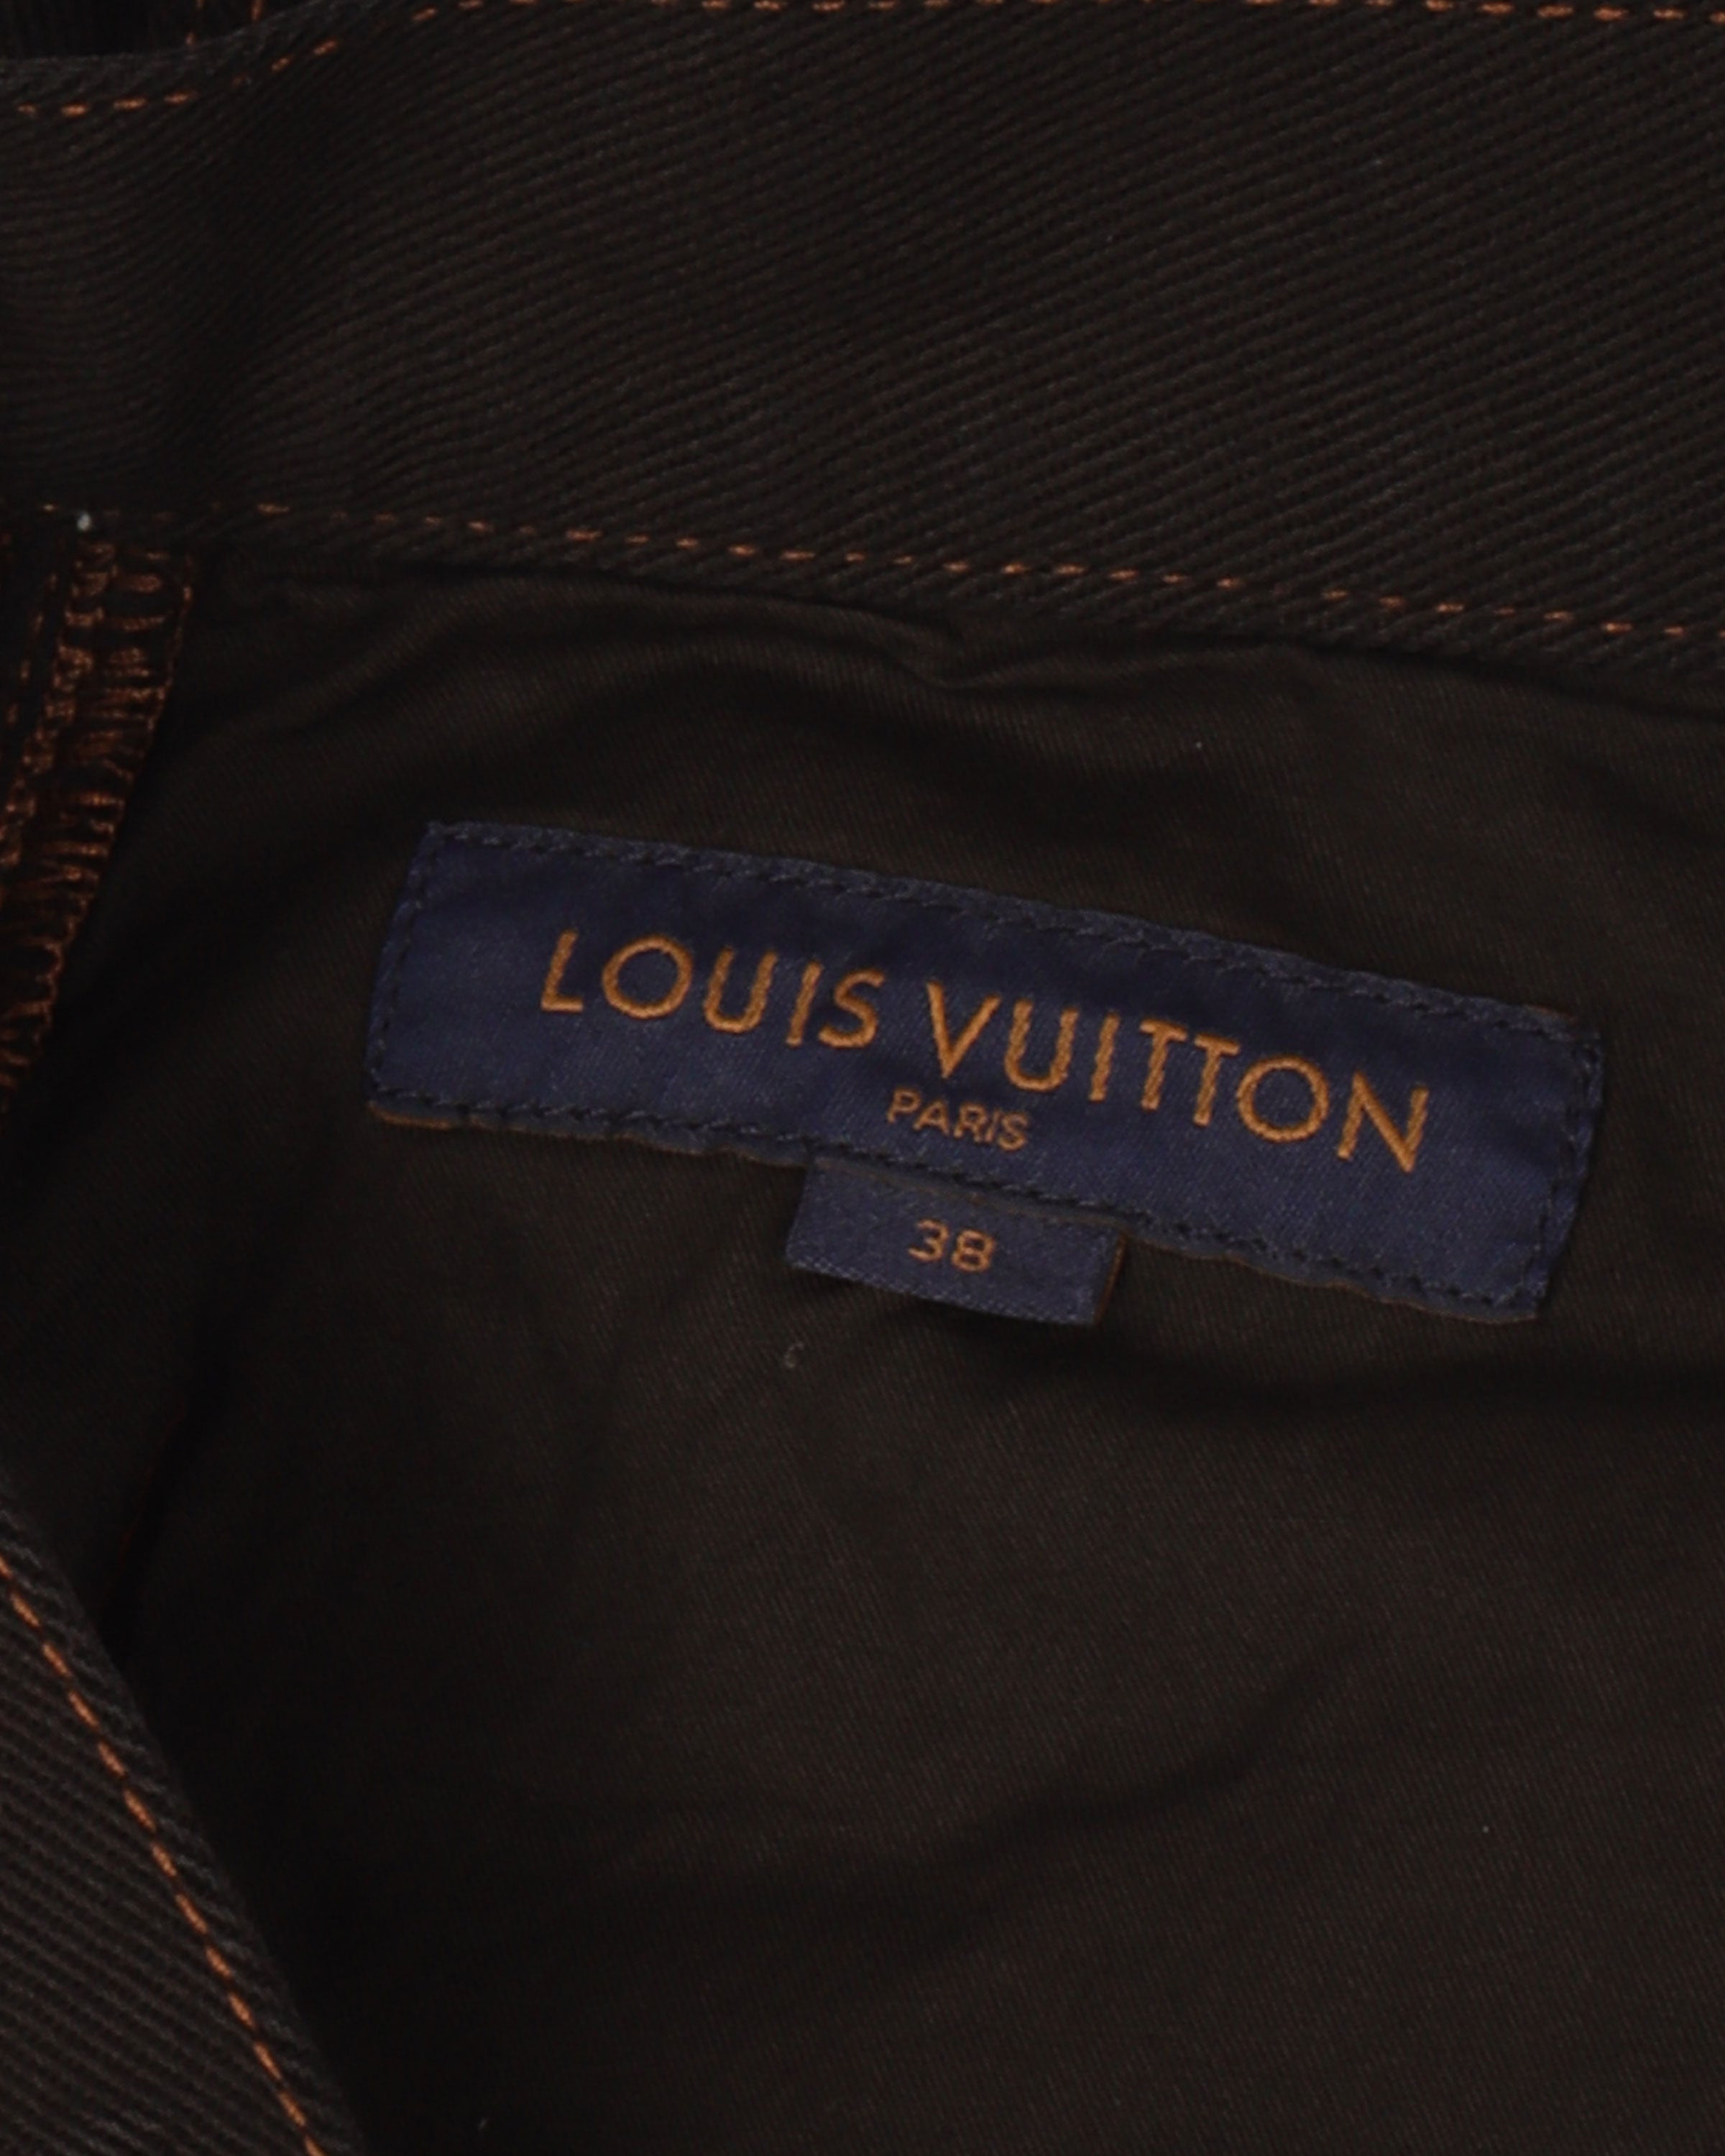 Louis Vuitton Double Knee Carpenter Cargo Archival - Depop